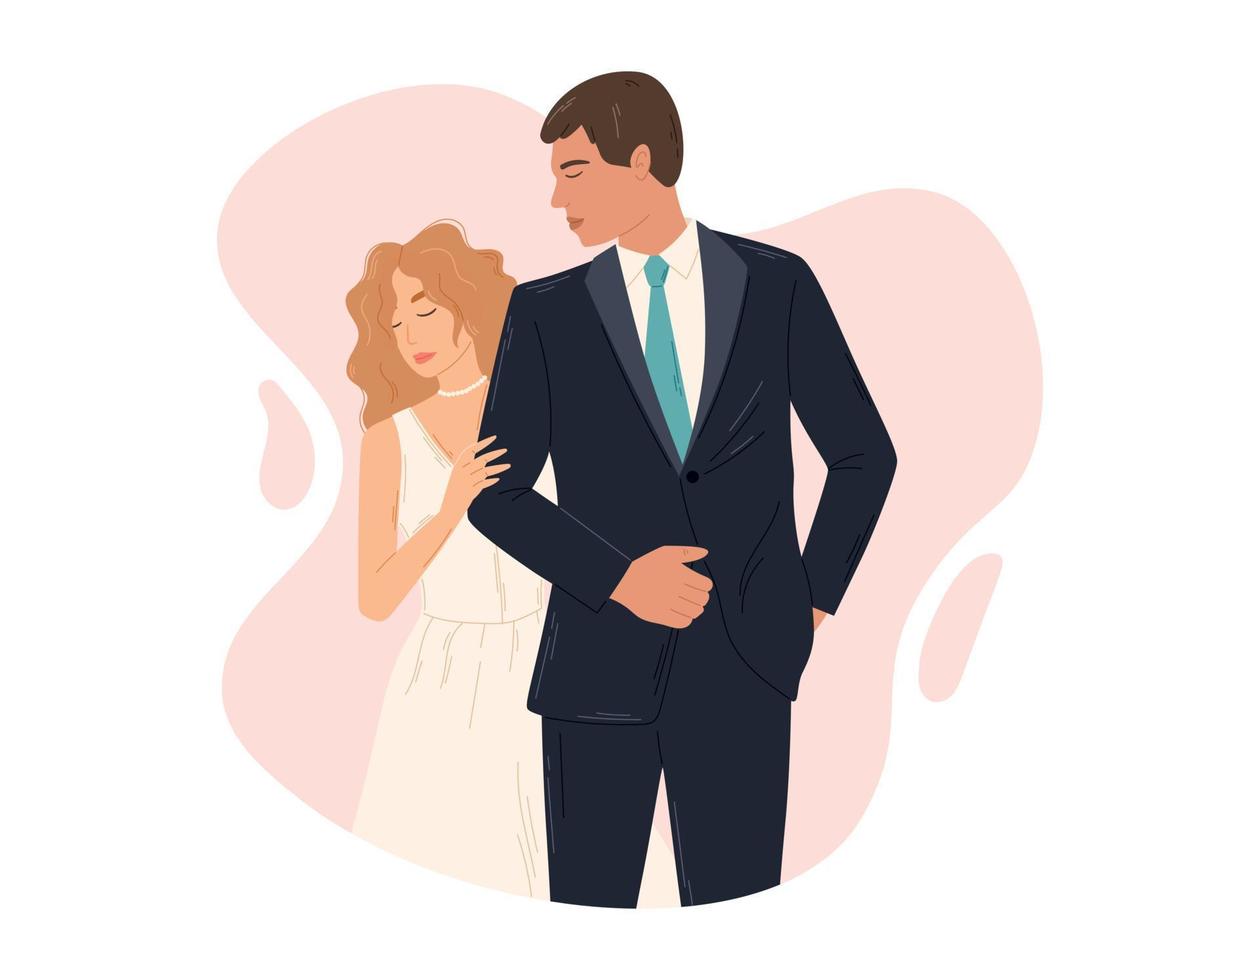 Jeune couple dans aimer, permanent la mariée et jeune marié. mariage la cérémonie de une femme dans une robe et une homme dans une costume. vecteur isolé plat illustration.